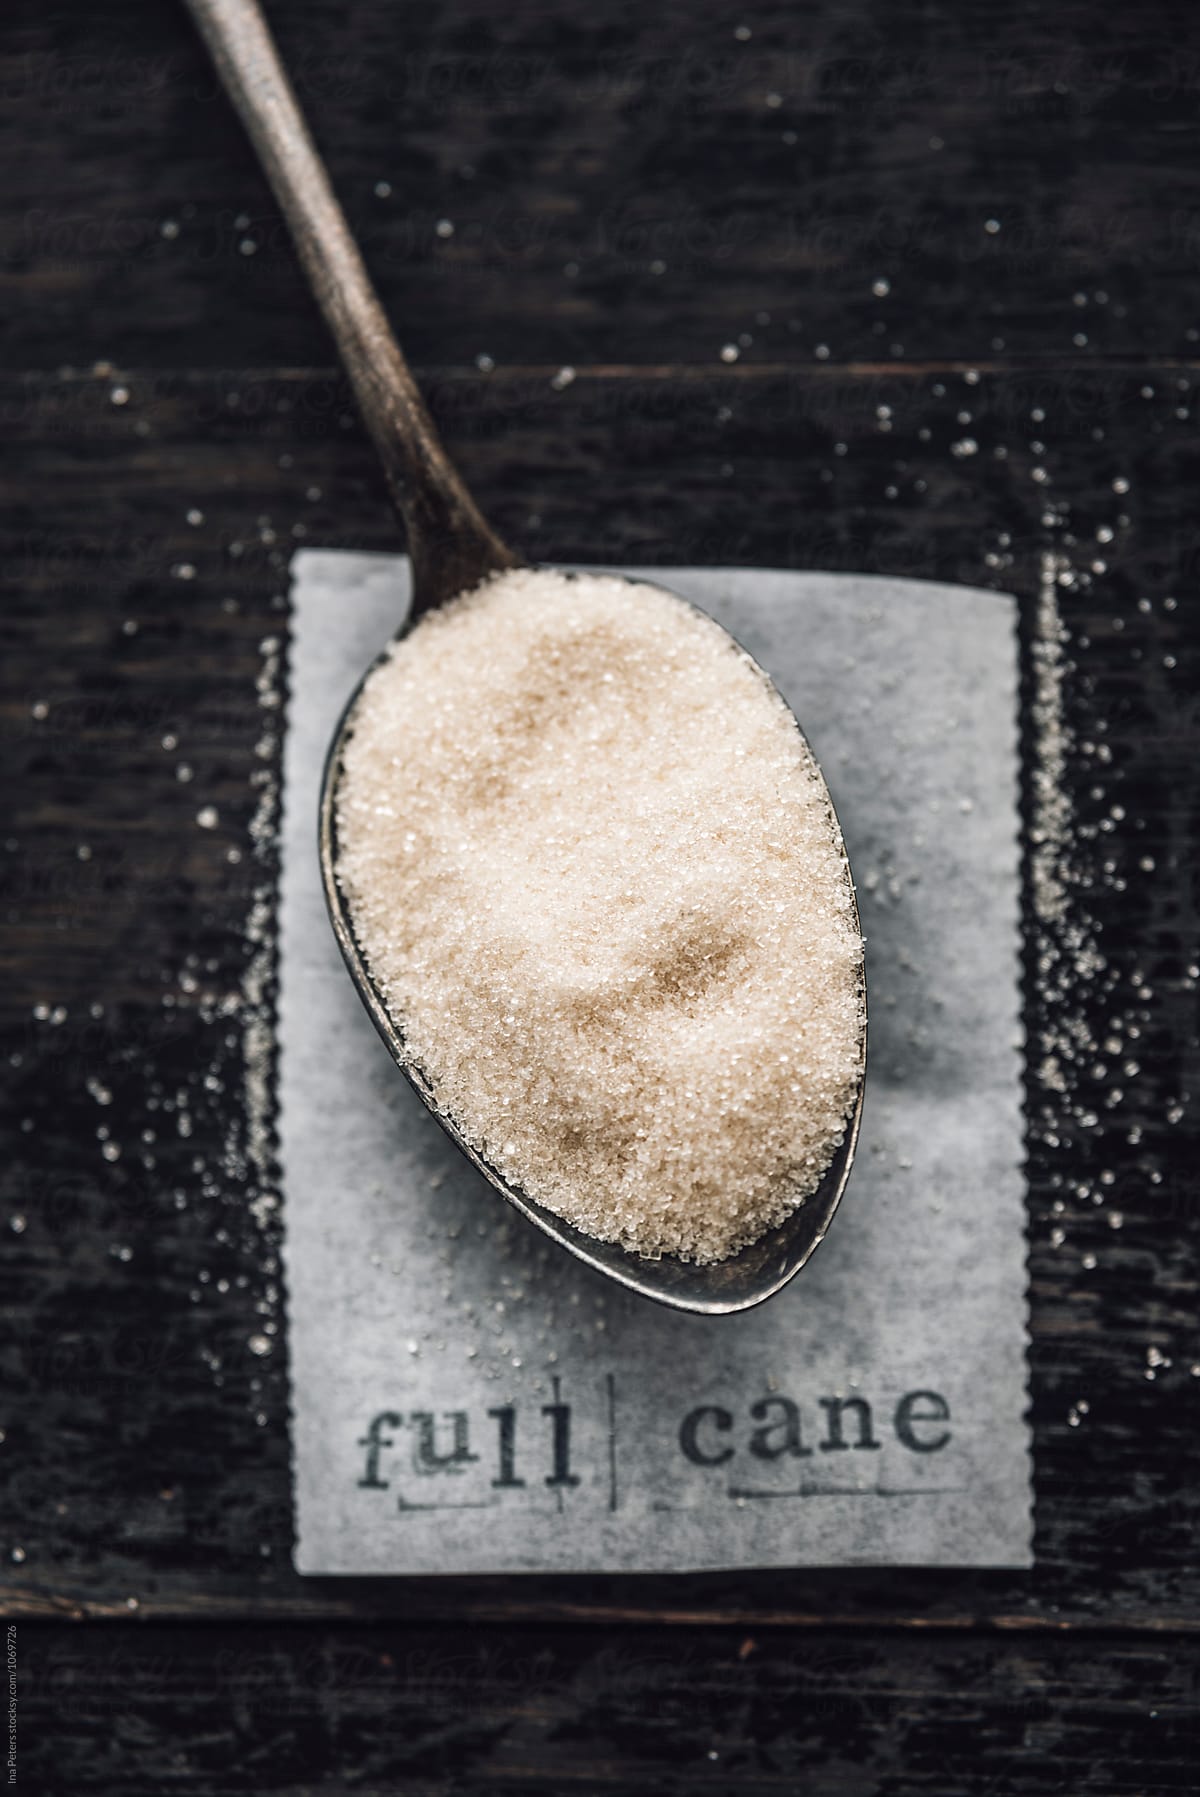 Food: Full cane sugar on a spoon